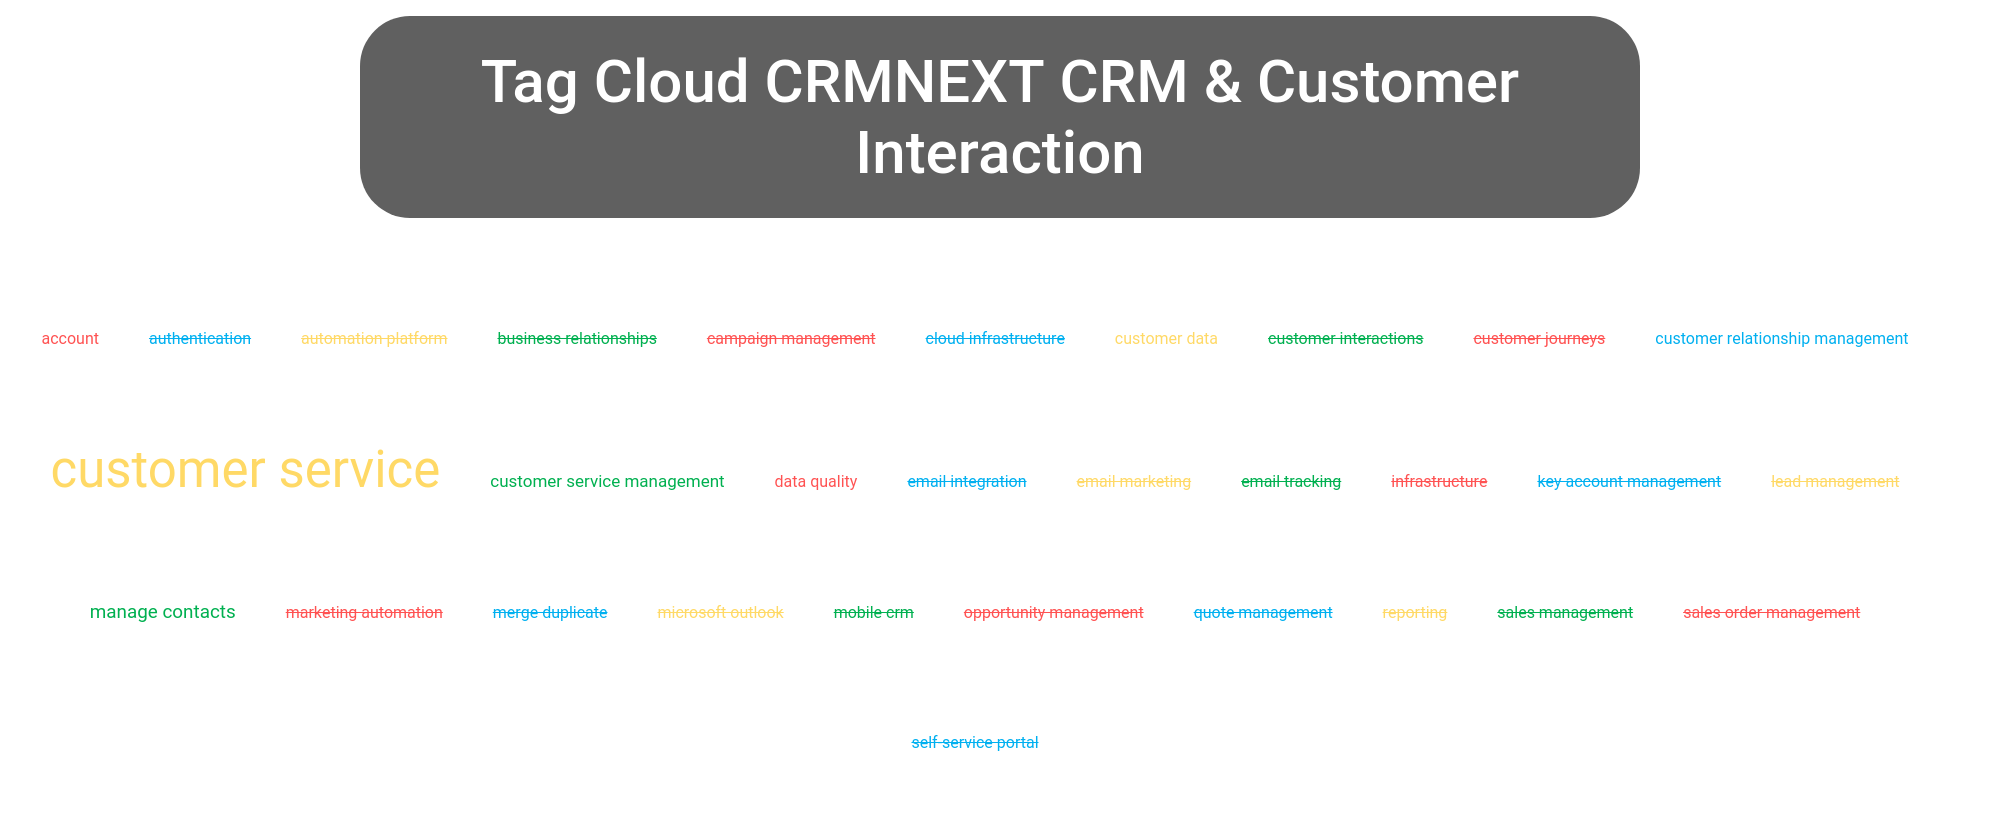 Tag cloud of the CRMNEXT CRM tools.